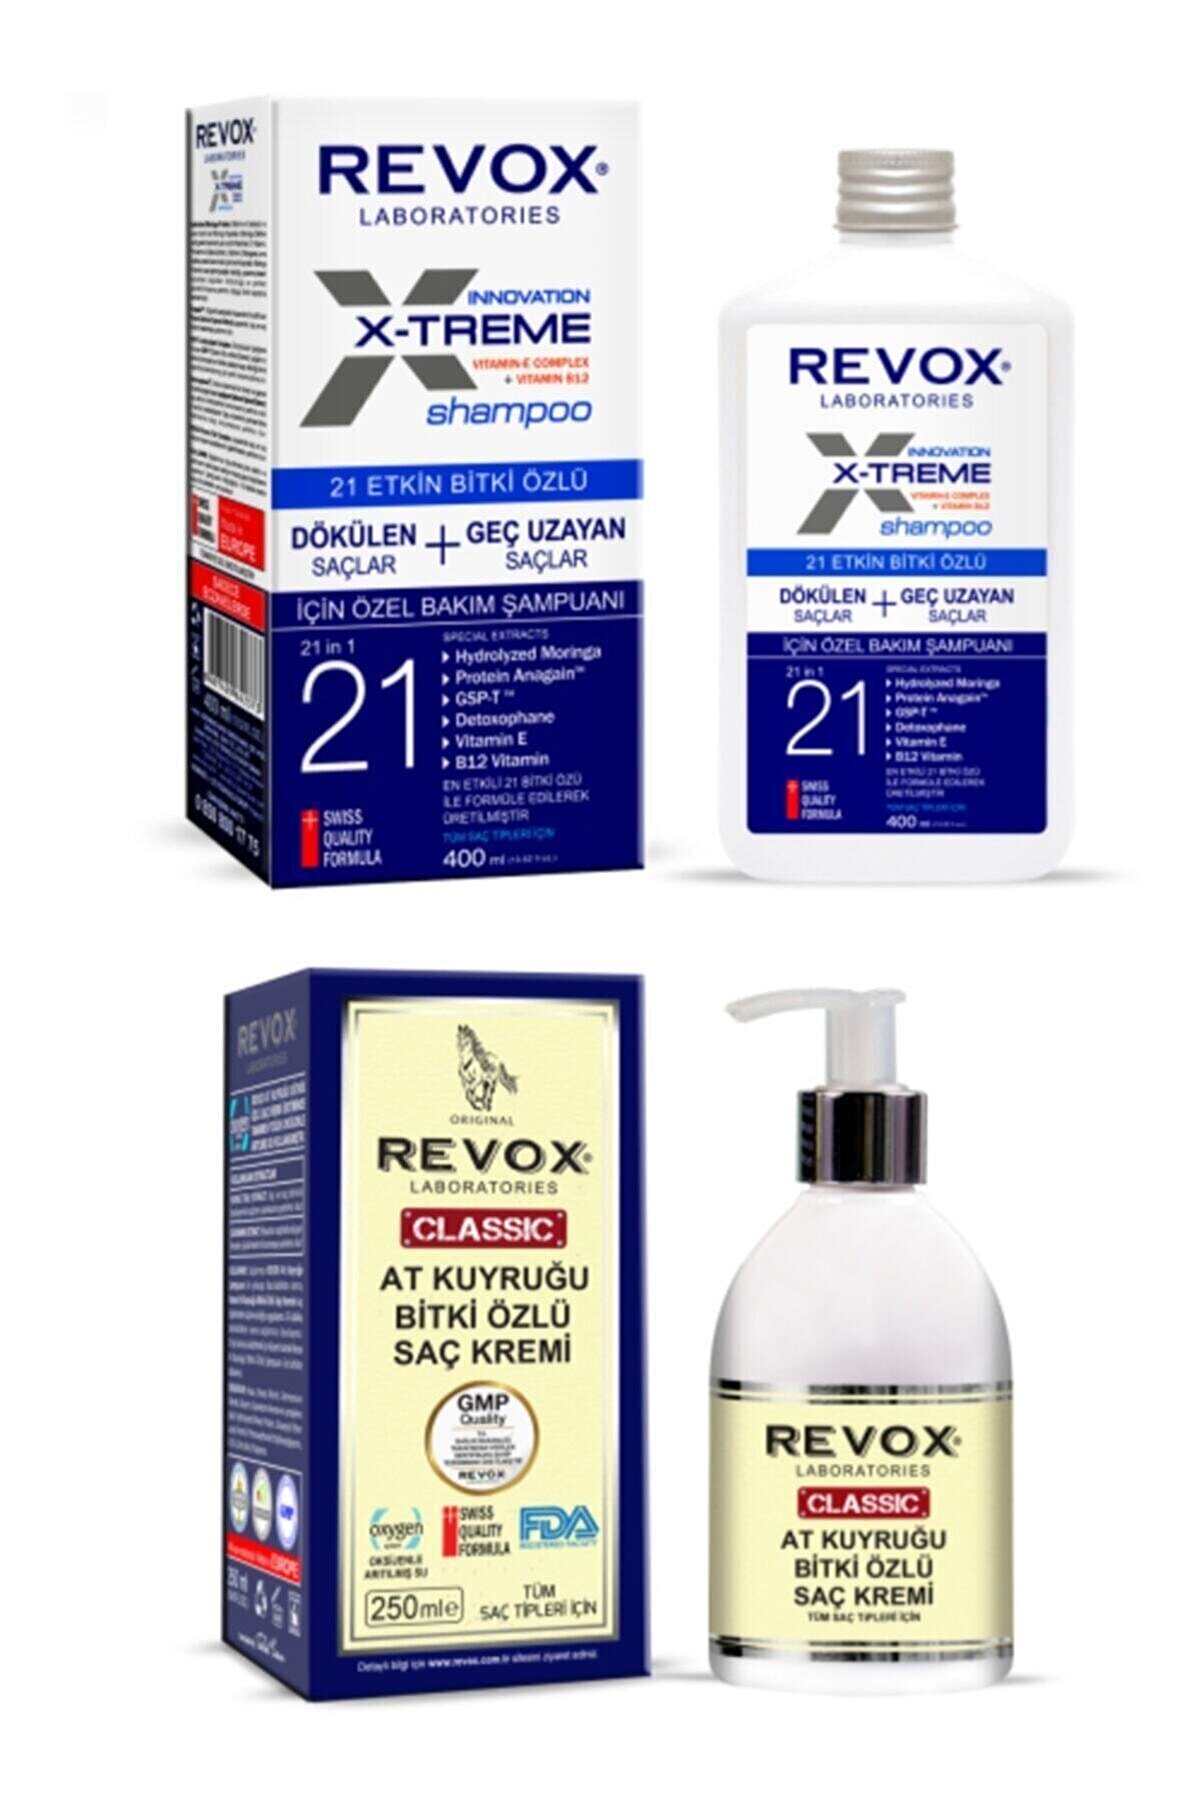 Revox Unisex X Treme Dökülen Ve Geç Uzayan Saçlara Özel Bakım Şampuanı At Kuyruğu Bitki Özlü Saç Kremi